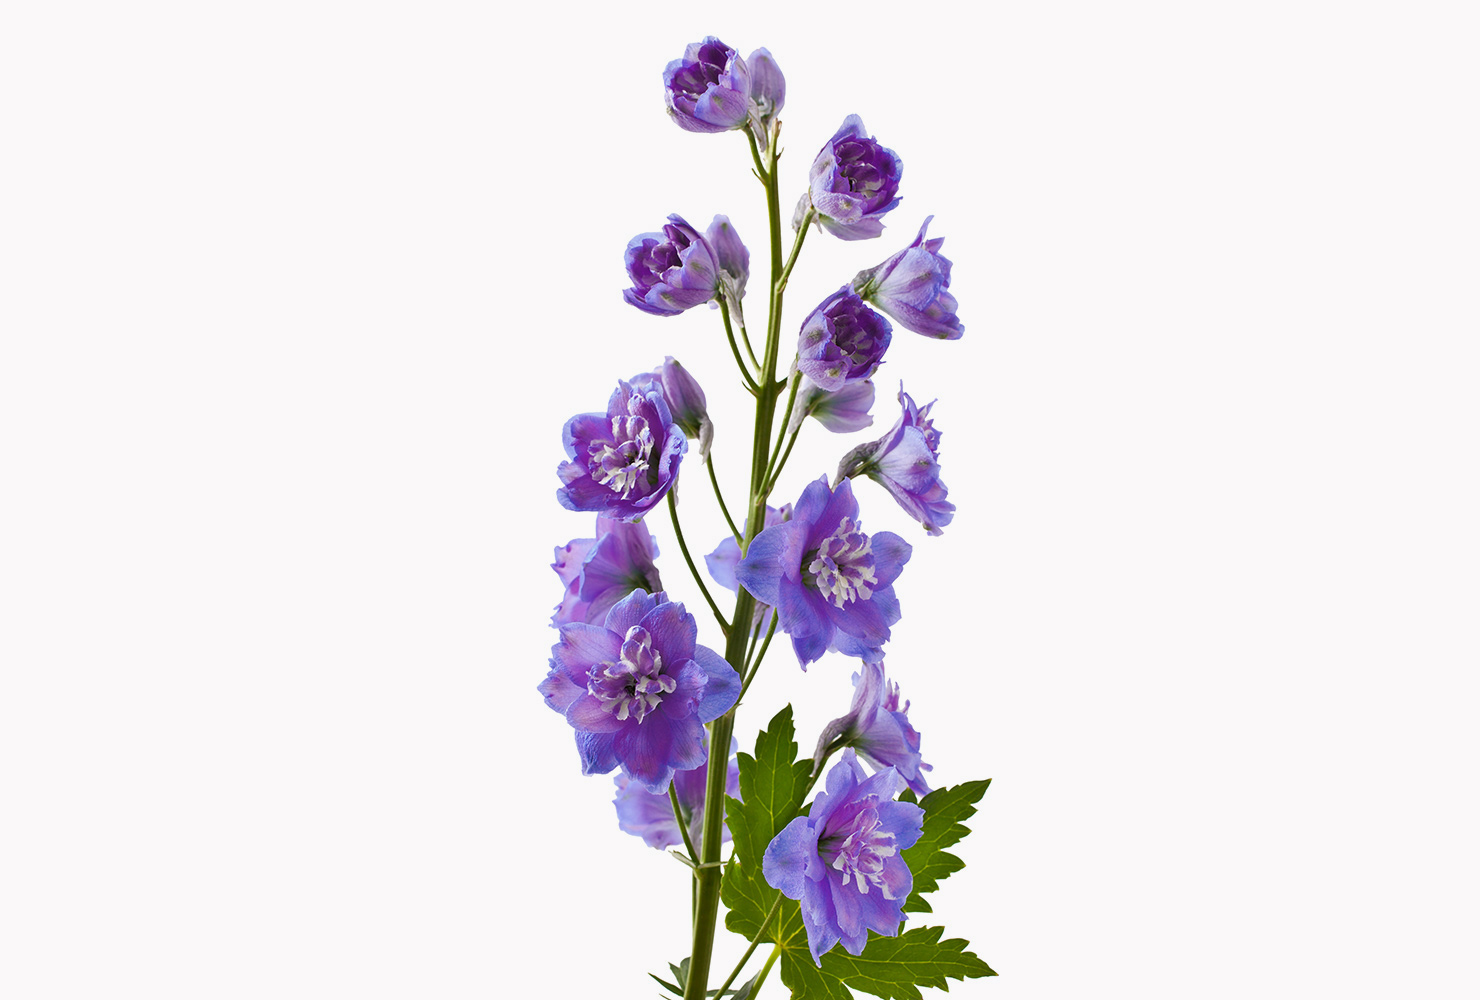 A purple delphinium flower. 